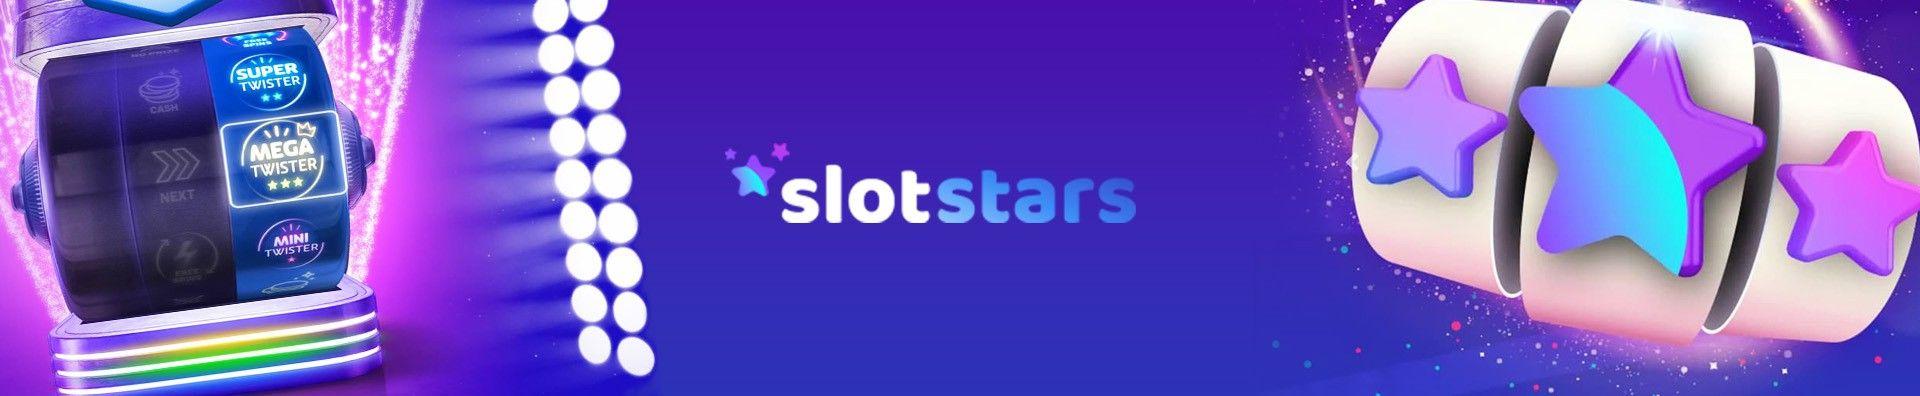 Slotstars recension